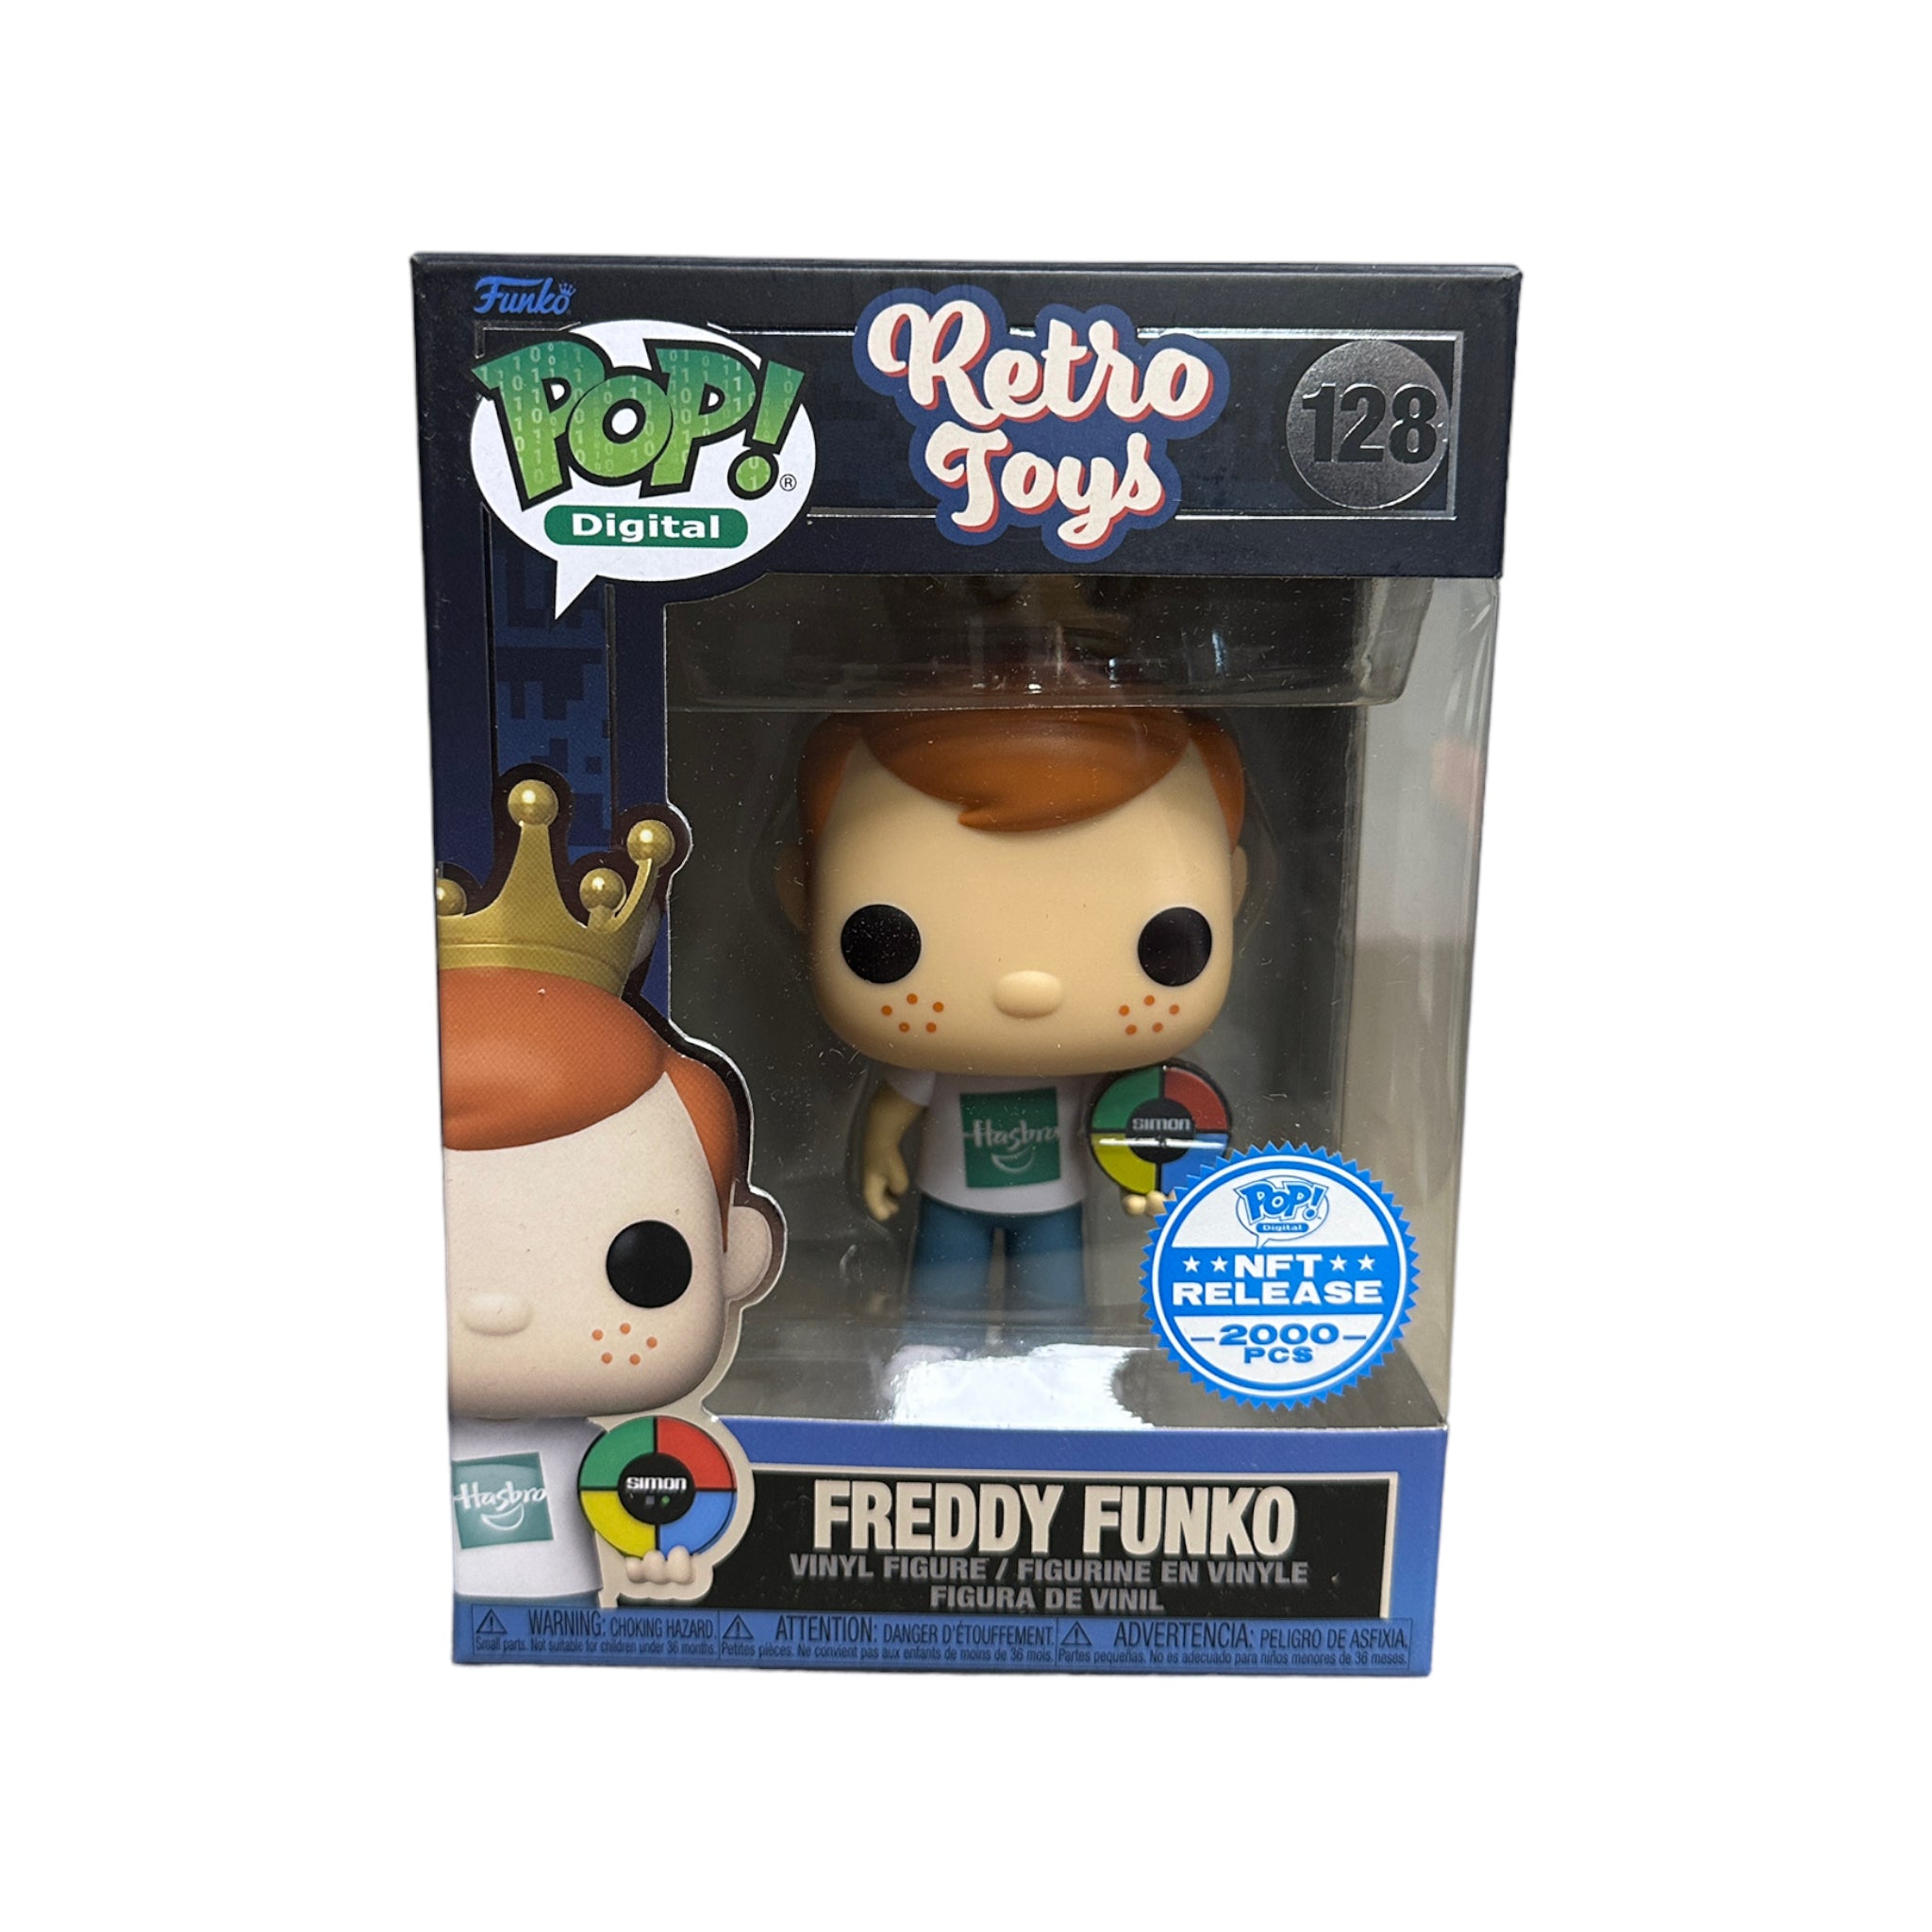 Freddy Funko (w/ Simon) #128 Funko Pop! - Retro Toys - NFT Release Exclusive LE2000 Pcs - Condition 8.75/10